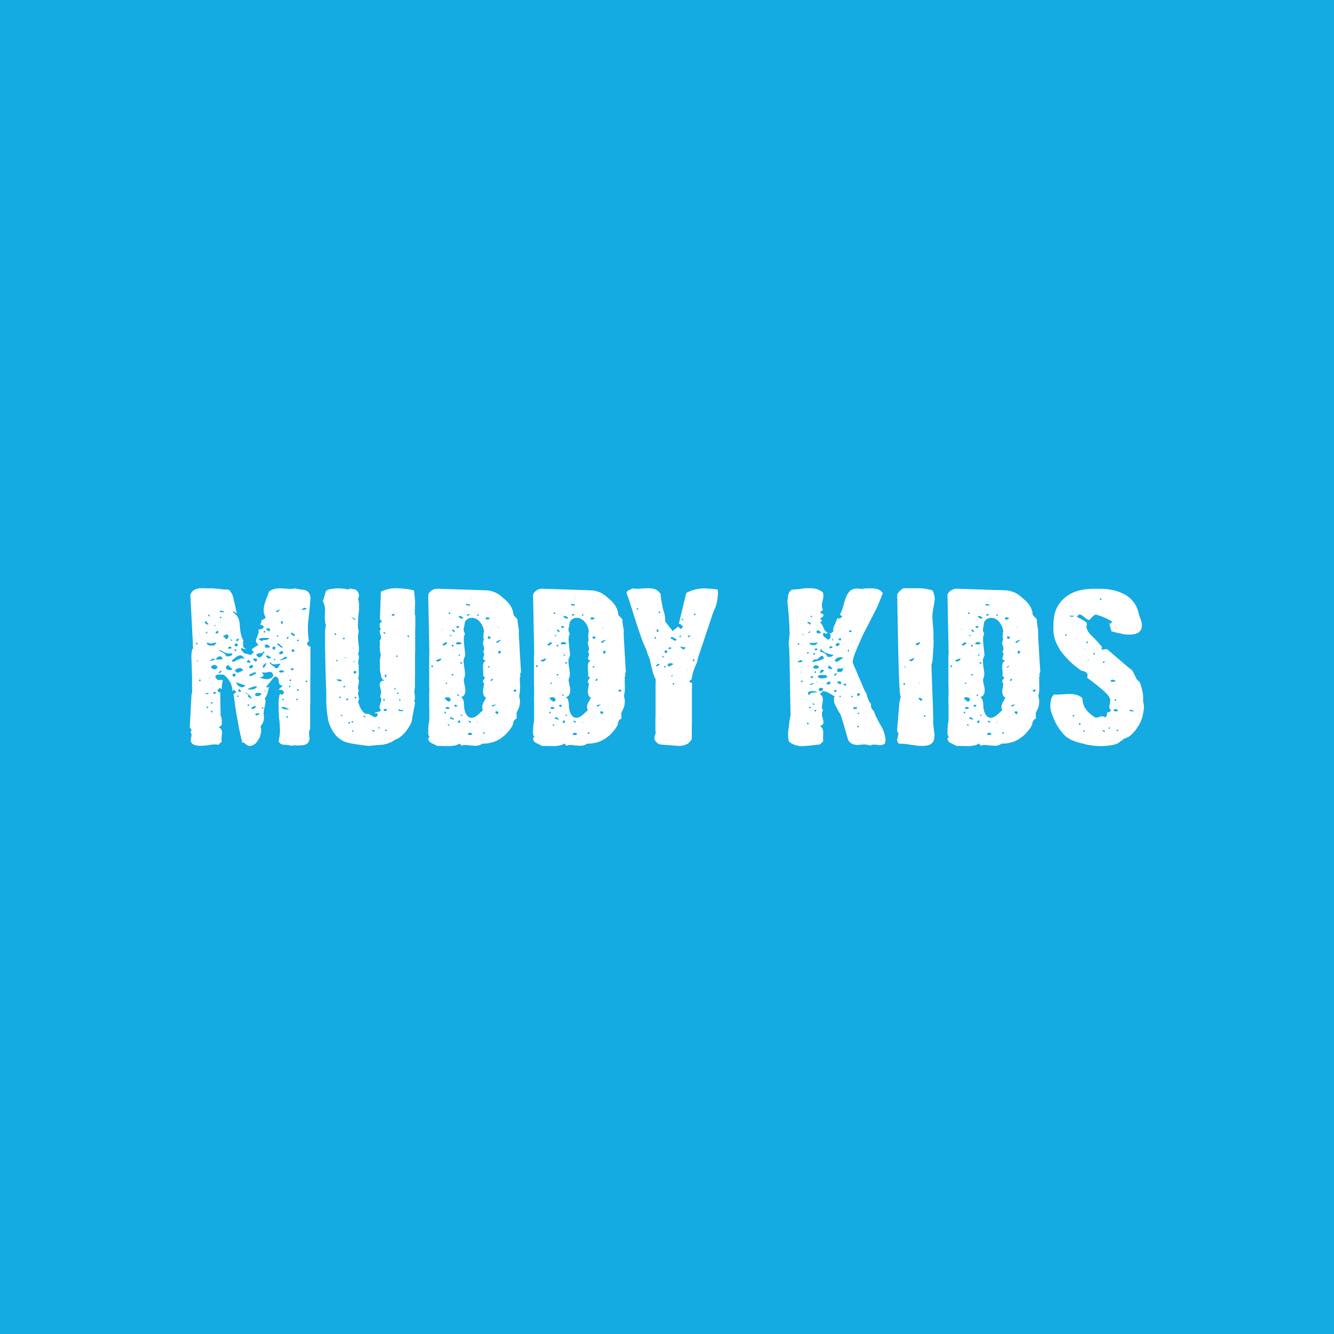 Image: Muddy Kids Logo